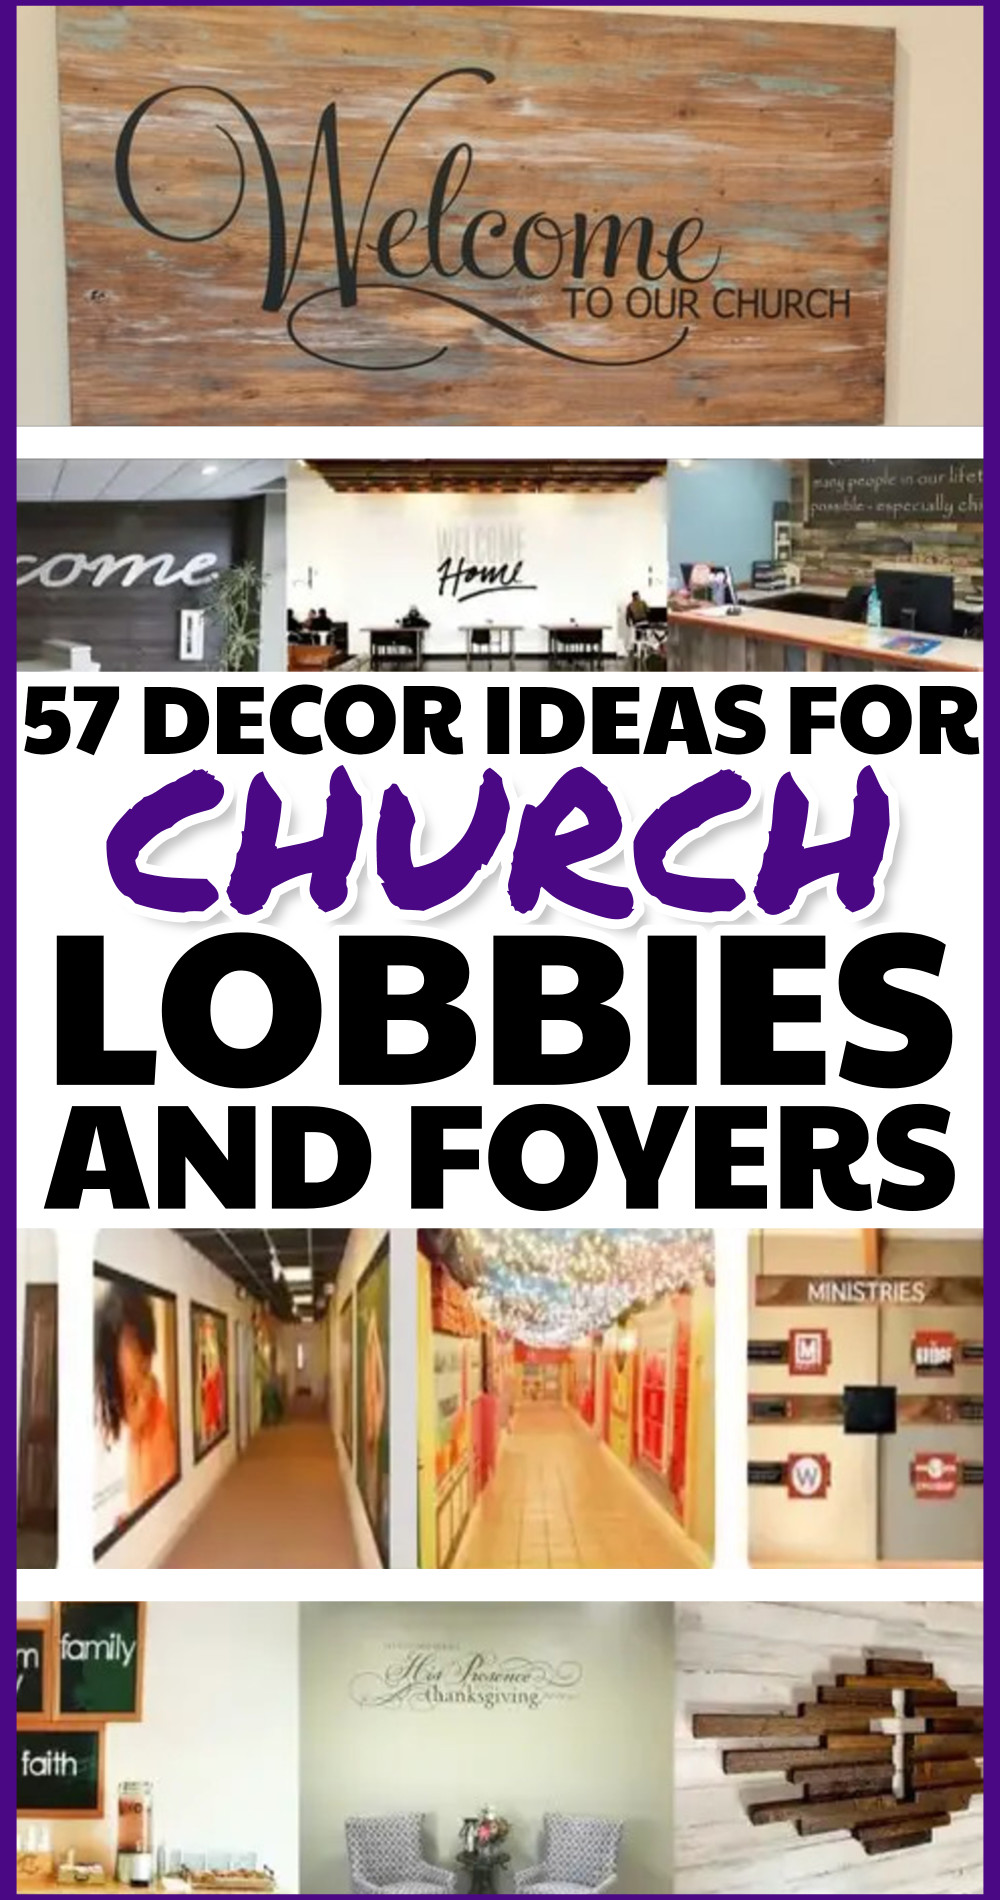 Church Entryway Decor Ideas For Lobbies and Foyers